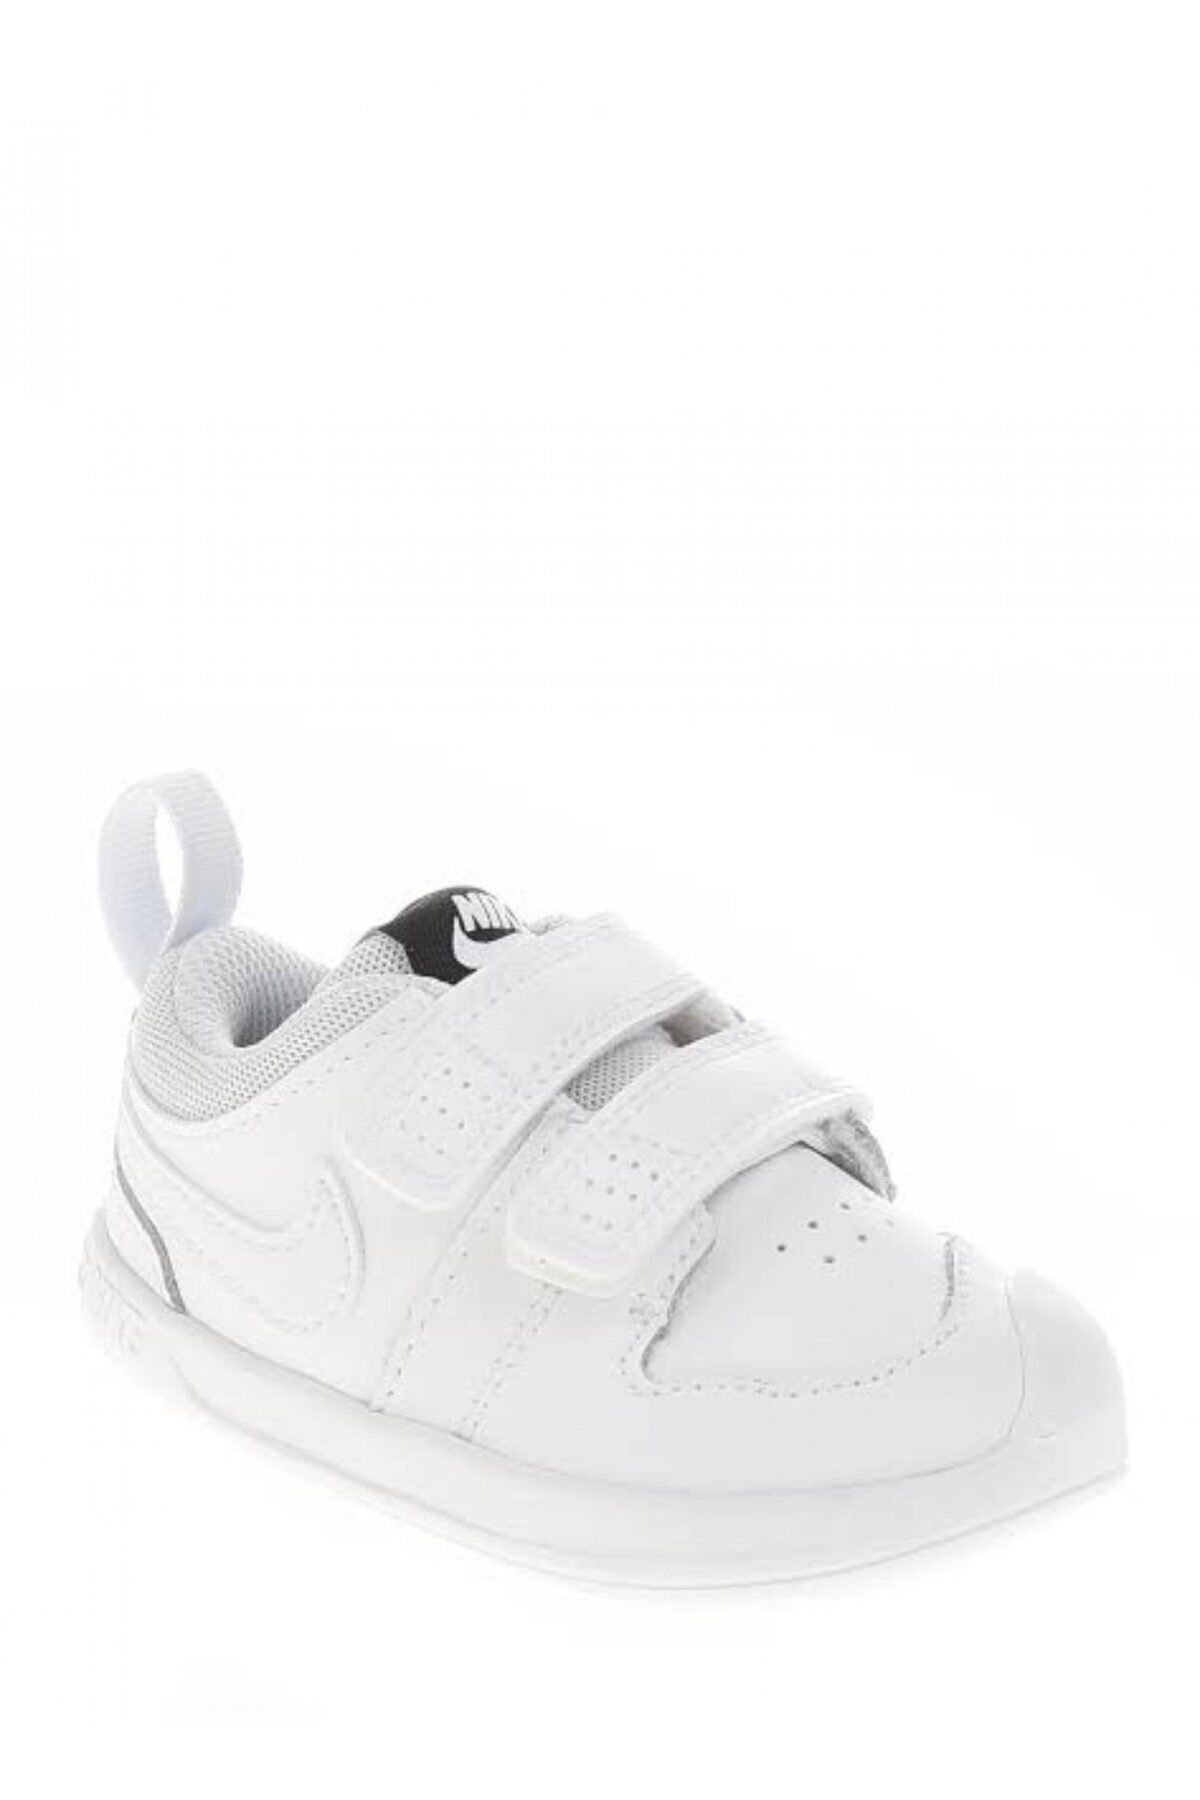 Nike Ar4162-100 Pıco 5 Bebek Tenis Ayakkabı